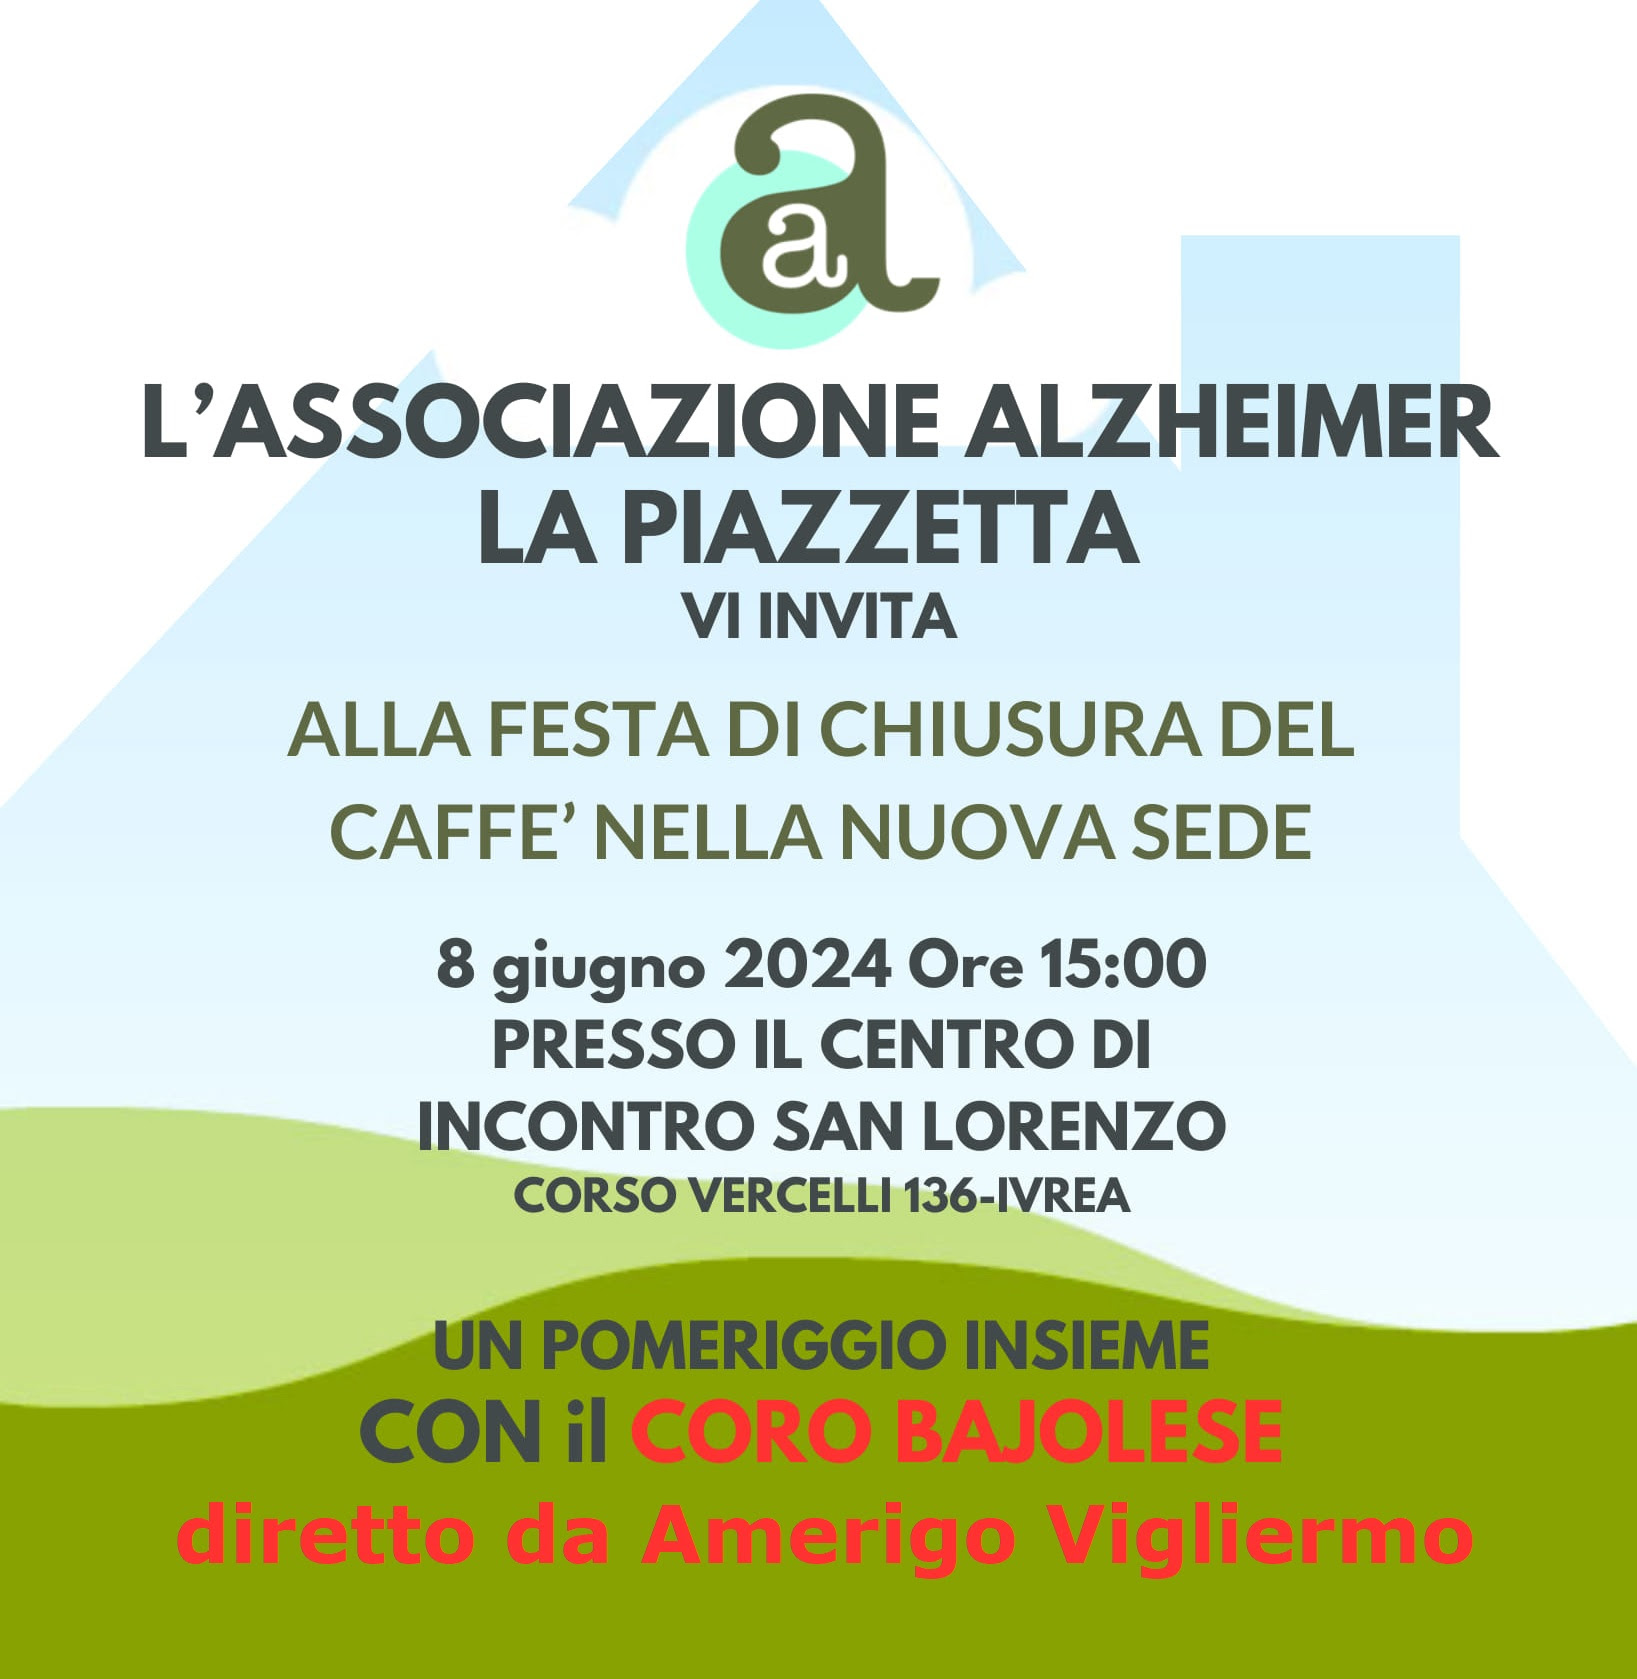 Festa al Caffè Alzheimer